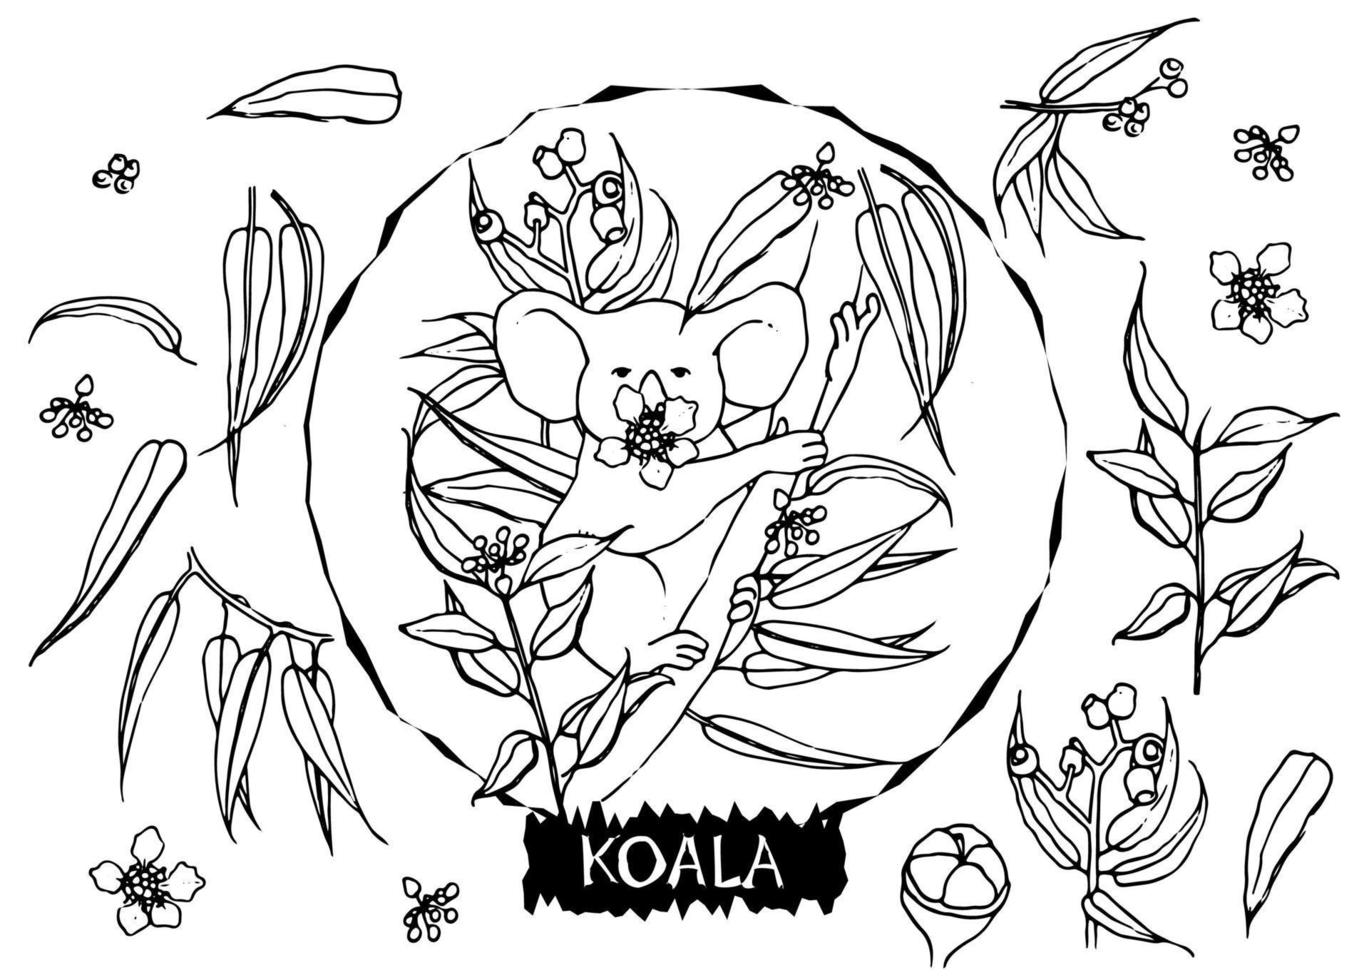 illustrazione vettoriale in bianco e nero di koala con foglie di eucalipto in stile doodle. tutti gli oggetti sono isolati